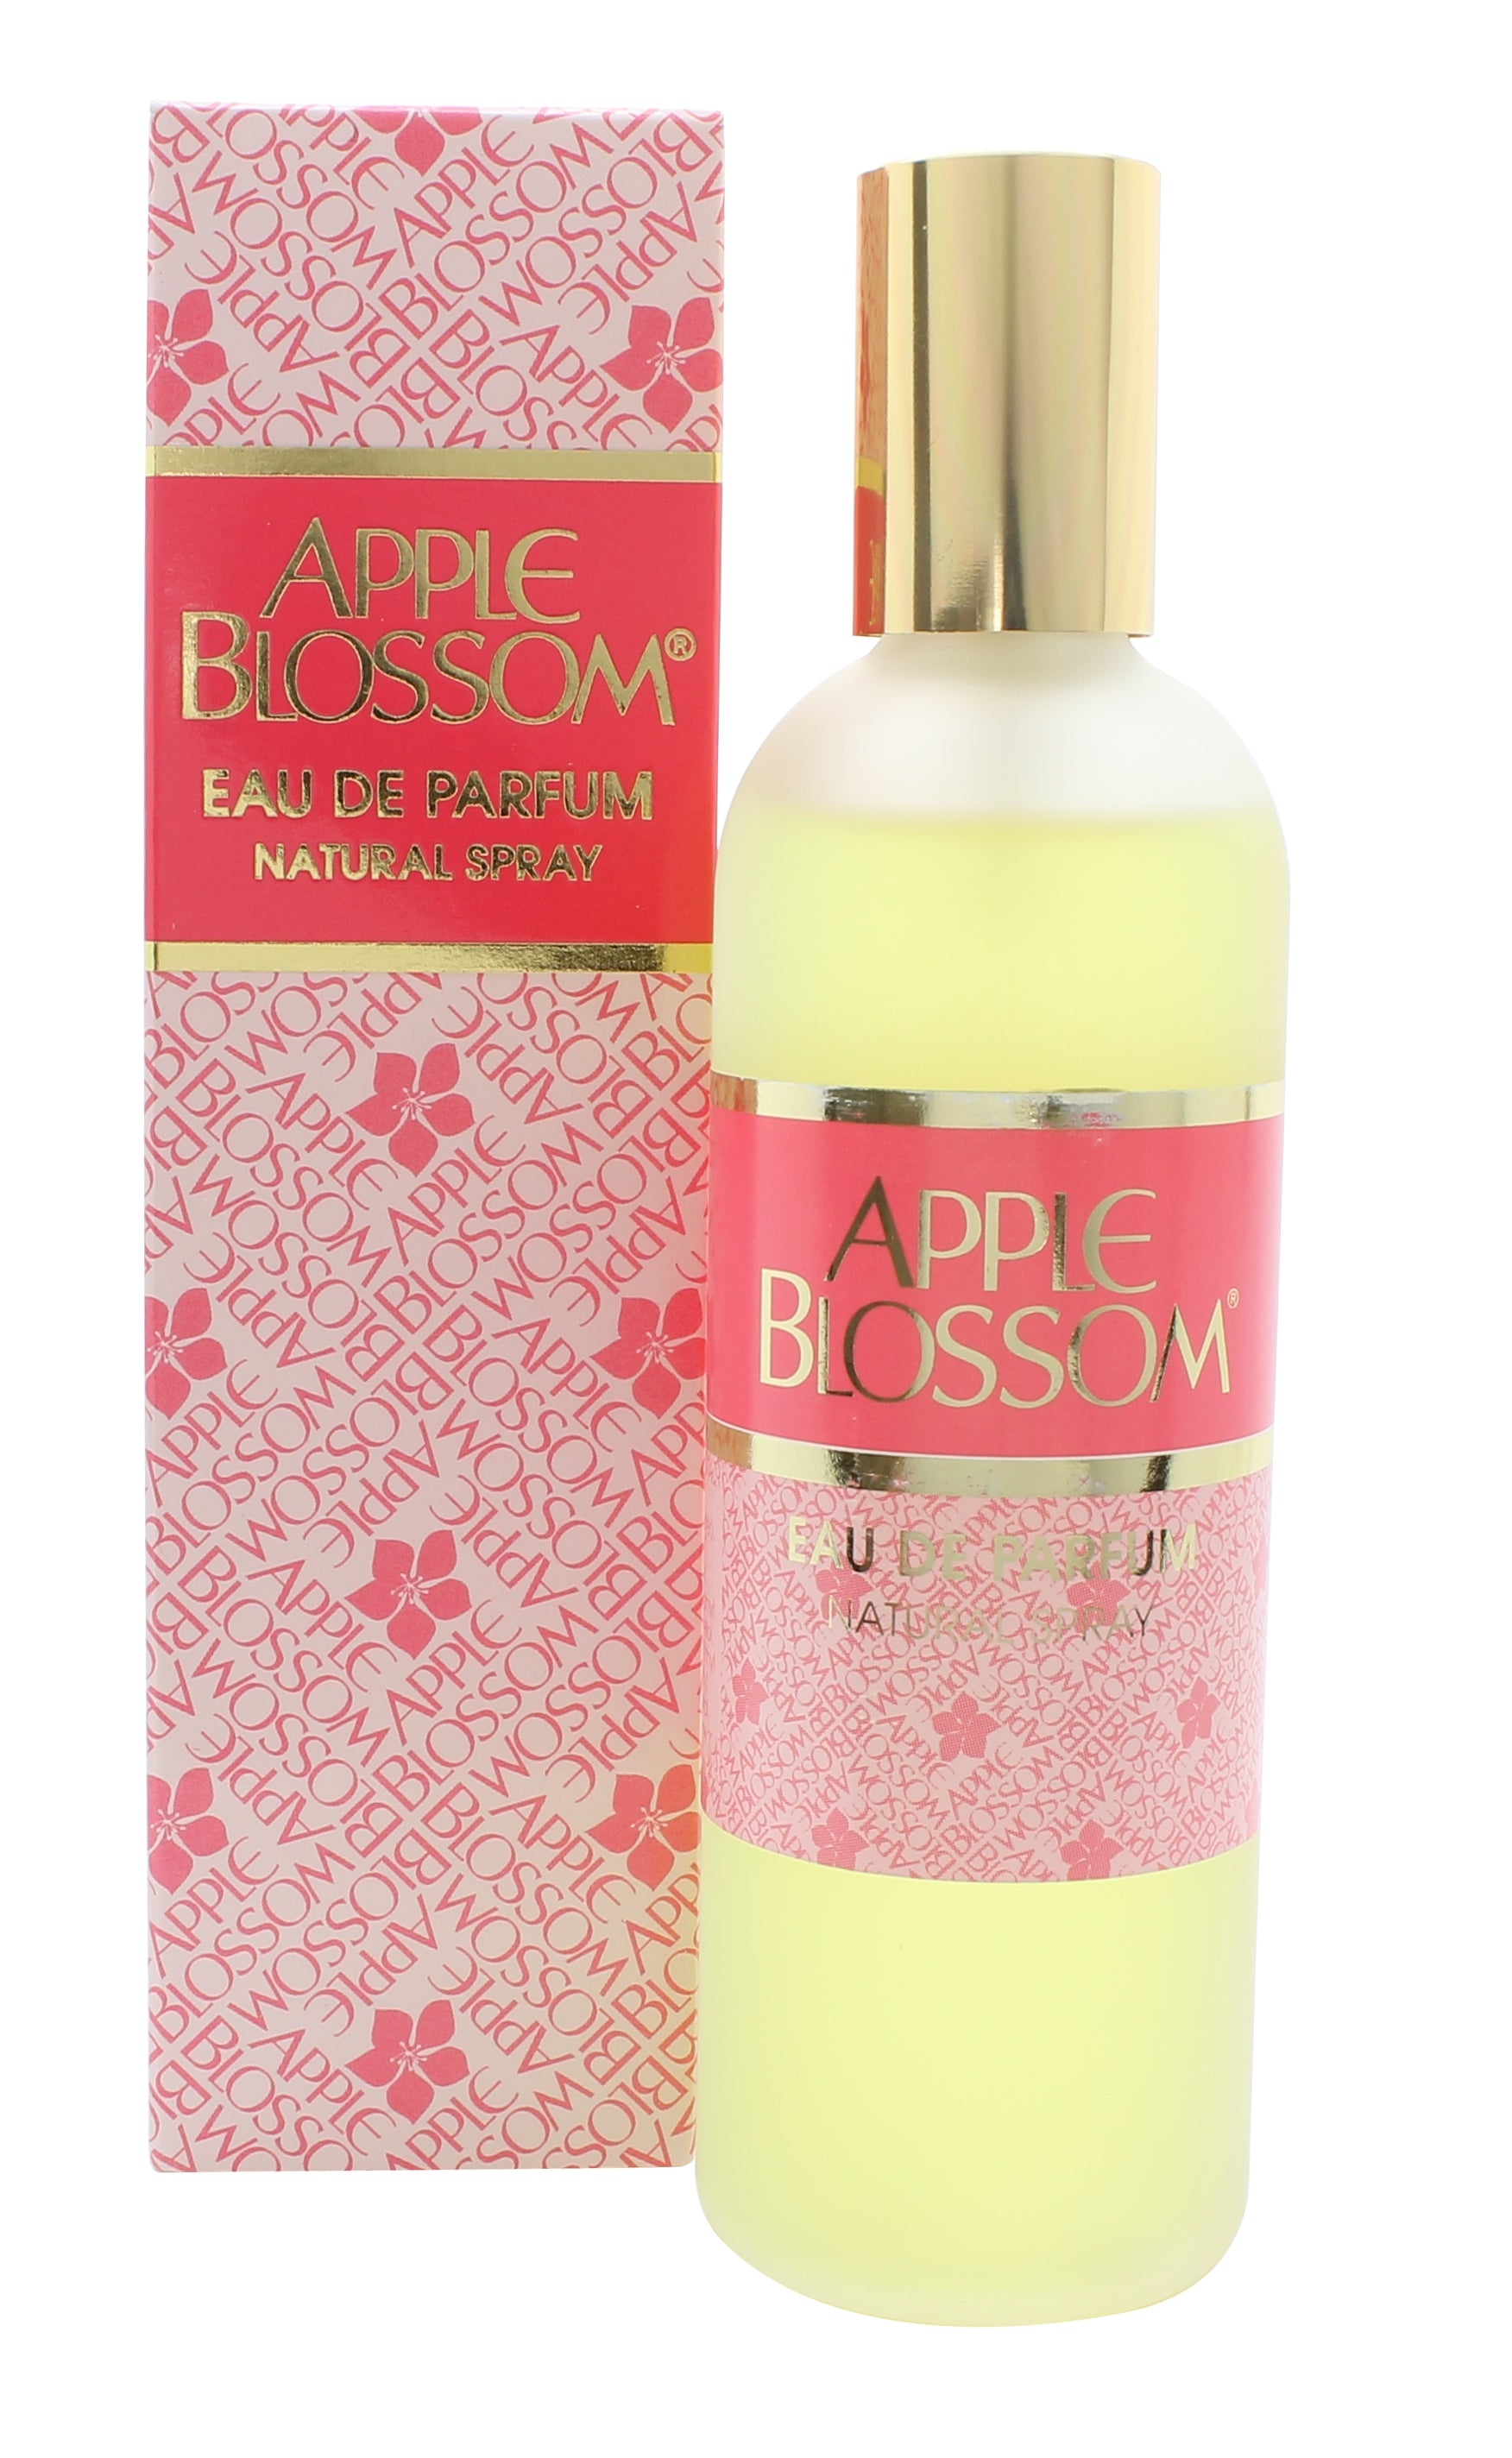 View Apple Blossom Eau de Parfum 100ml Spray information